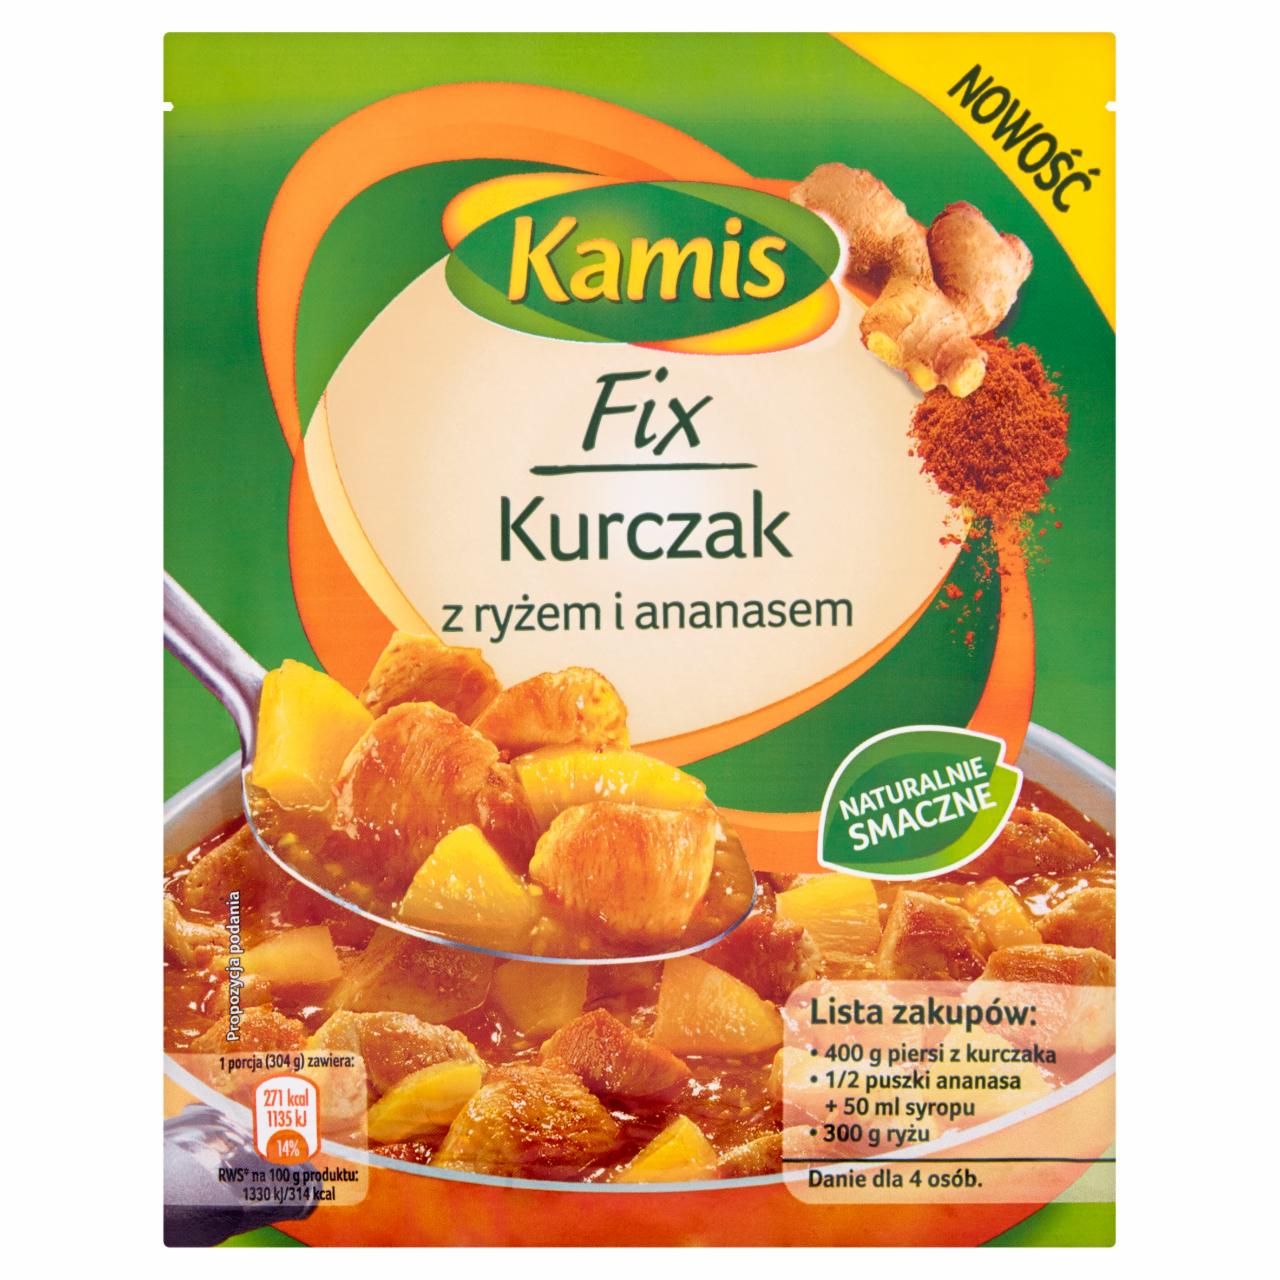 Zdjęcia - Kamis Fix Kurczak z ryżem i ananasem 45 g